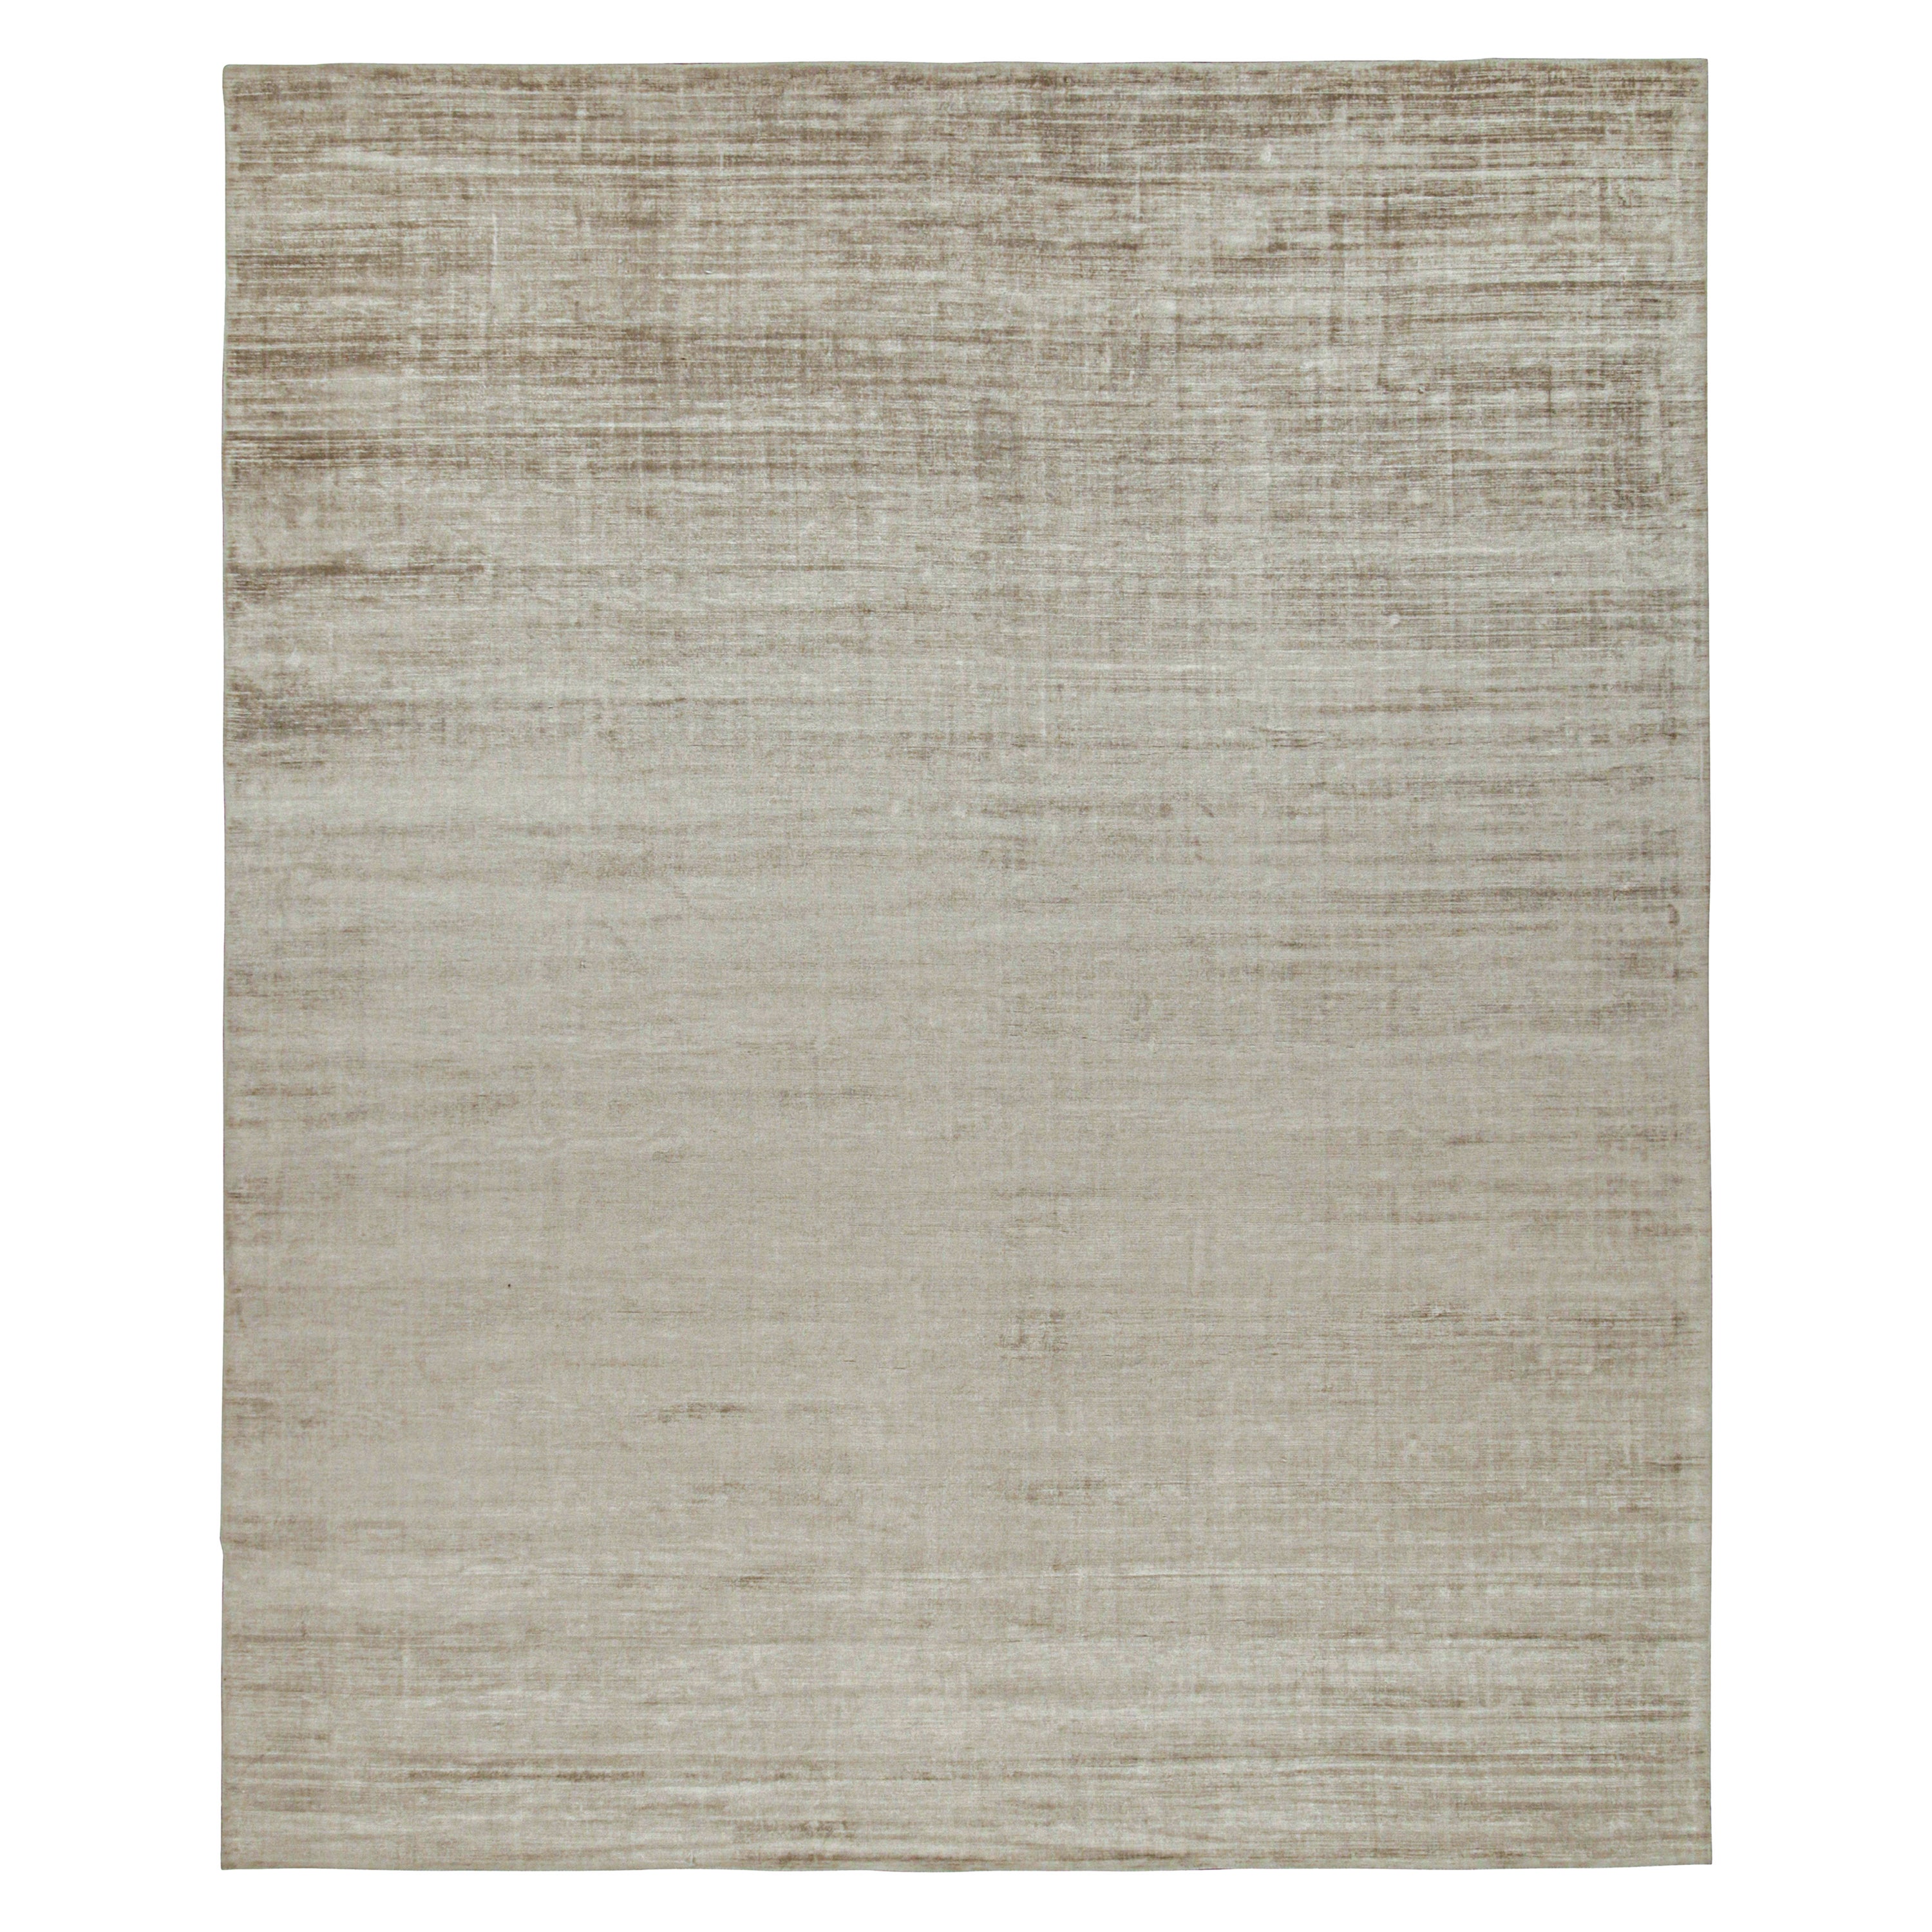 Ce tapis contemporain 12x15 est une nouvelle entrée grandiose dans la Collection Texture of Color de Rug & Kilim. Noué à la main en soie d'art et en coton. 

Les connaisseurs noteront que cette pièce est issue de notre nouvelle ligne Light on Loom,